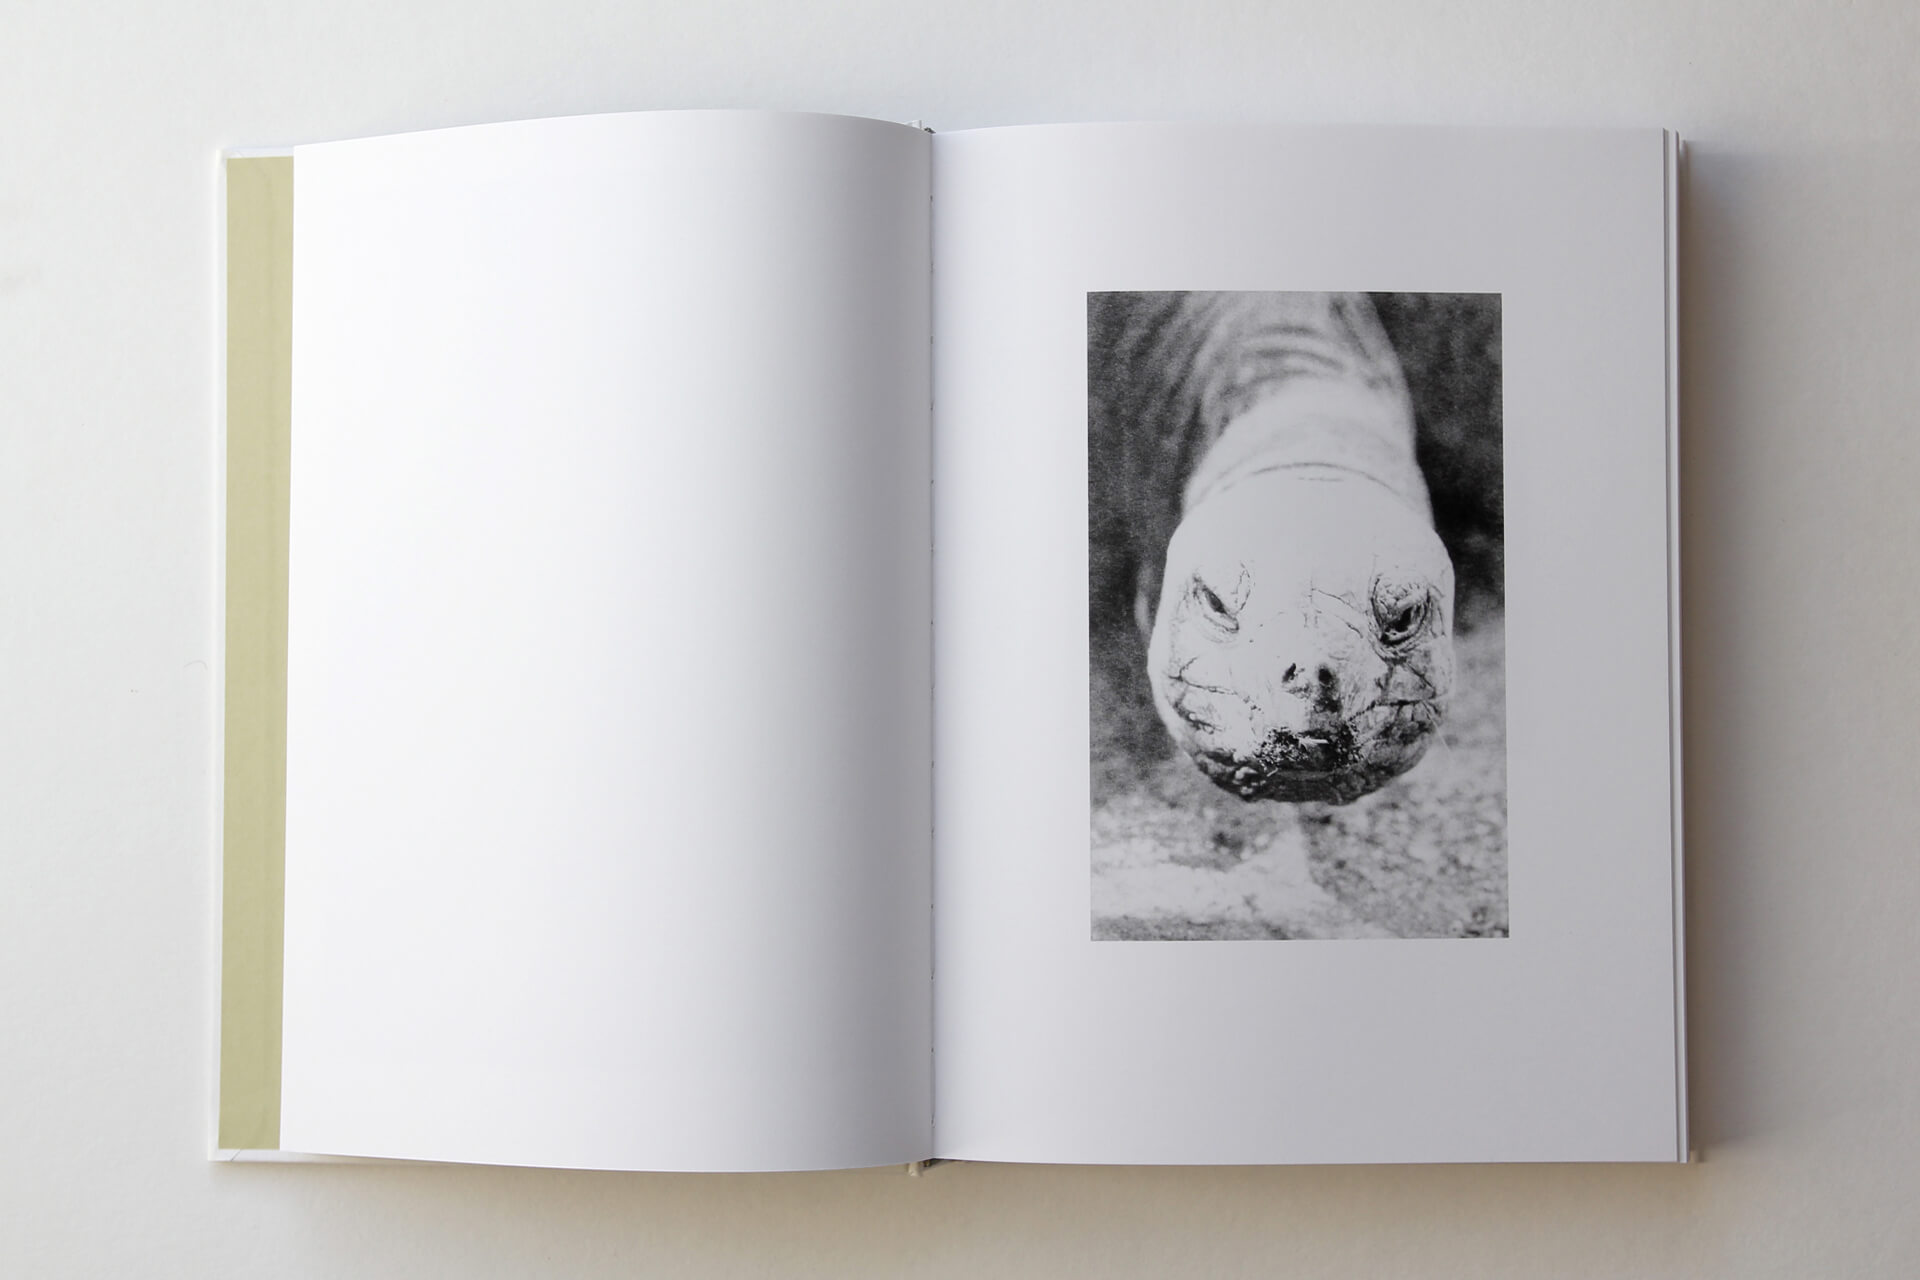 Doppelseite aus „Phenotype“  von J. Lempert. Rechts: schwarz-weiß-Foto mit Kopf einer Schildkröte